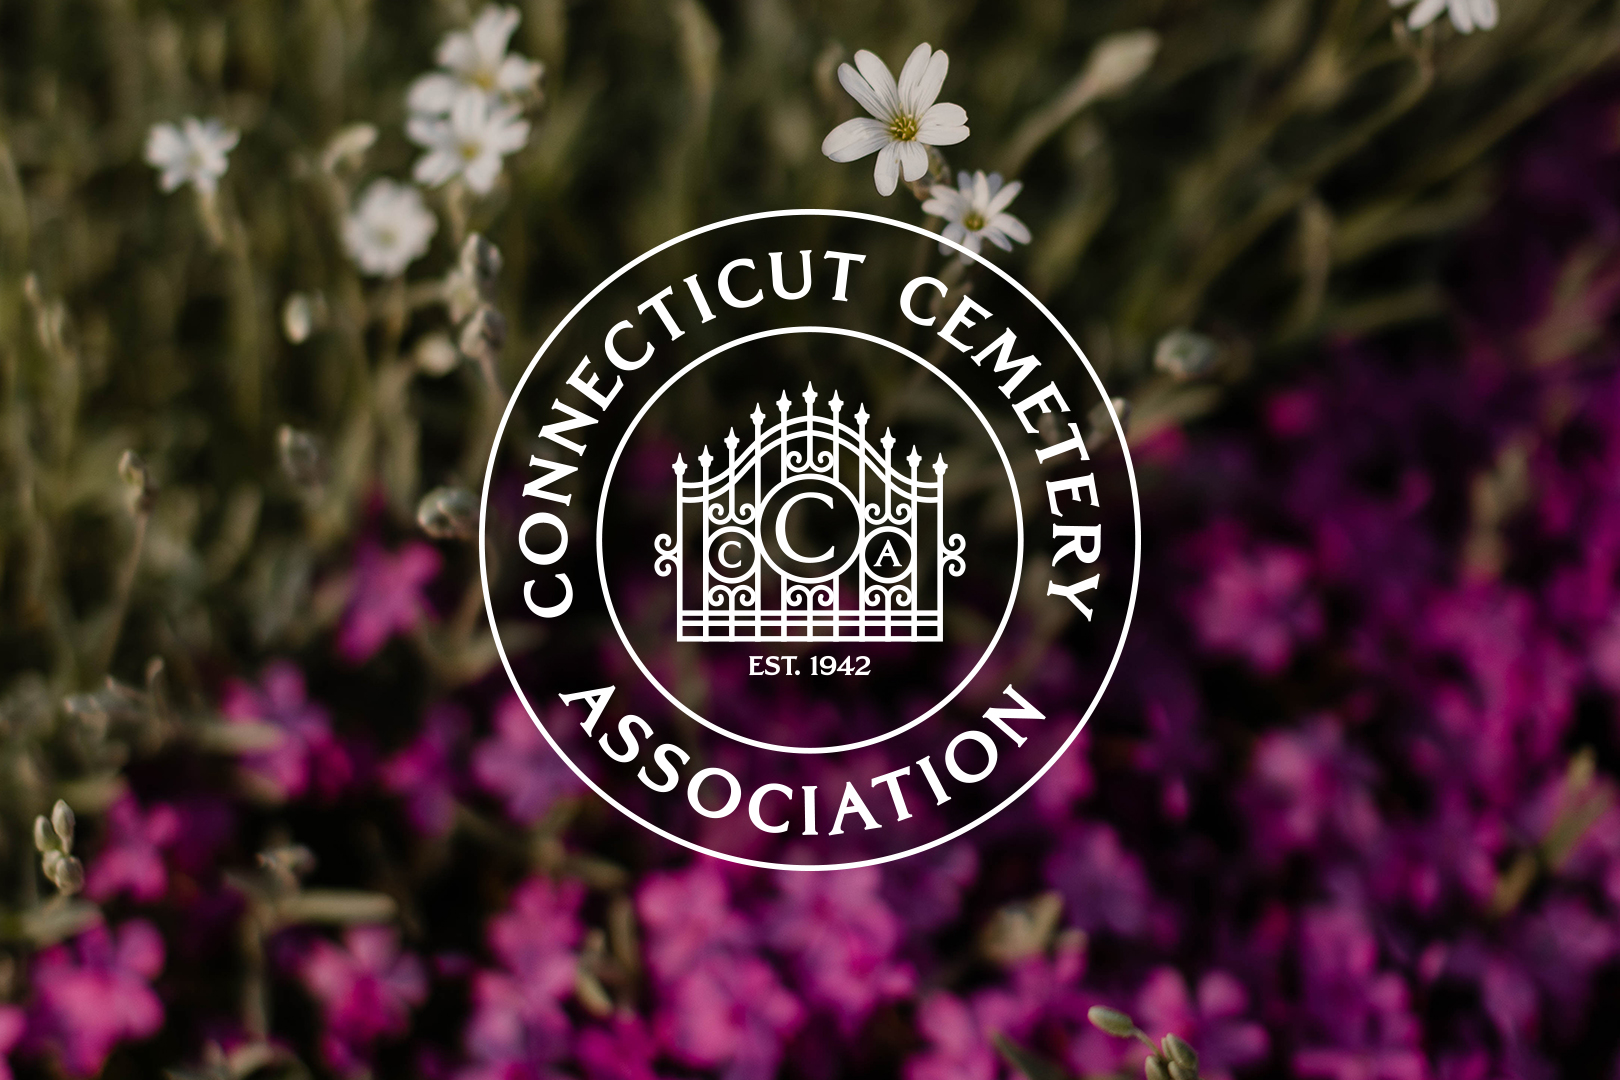 Connecticut Cemetery Association